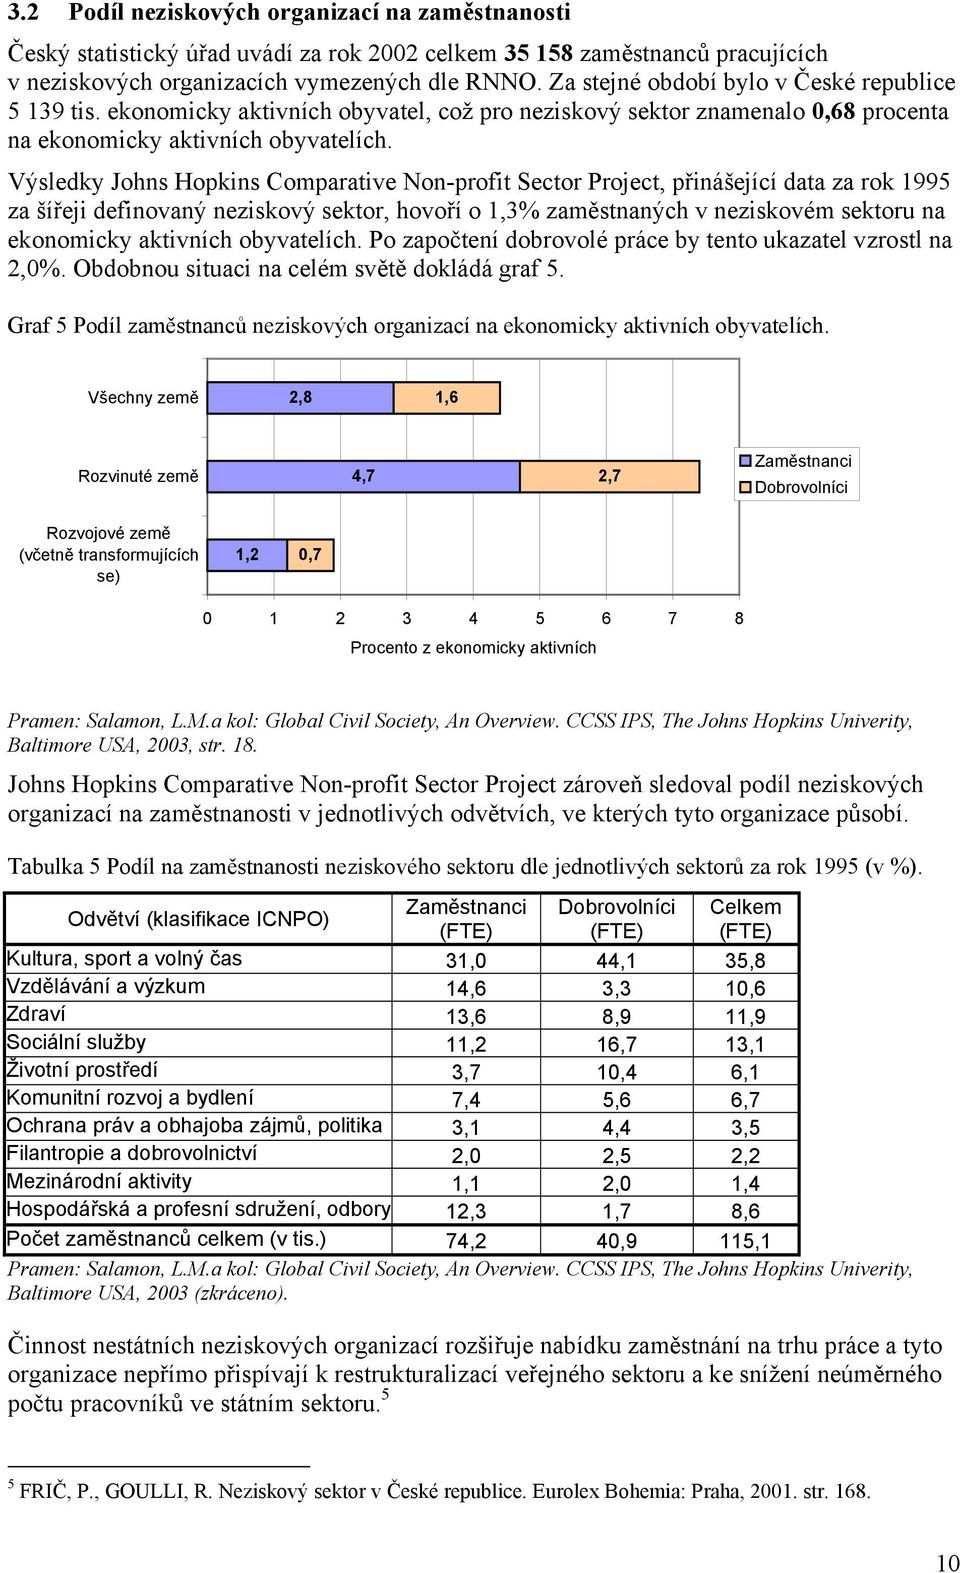 Výsledky Johns Hopkins Comparative Non-profit Sector Project, přinášející data za rok 1995 za šířeji definovaný neziskový sektor, hovoří o 1,3% zaměstnaných v neziskovém sektoru na ekonomicky